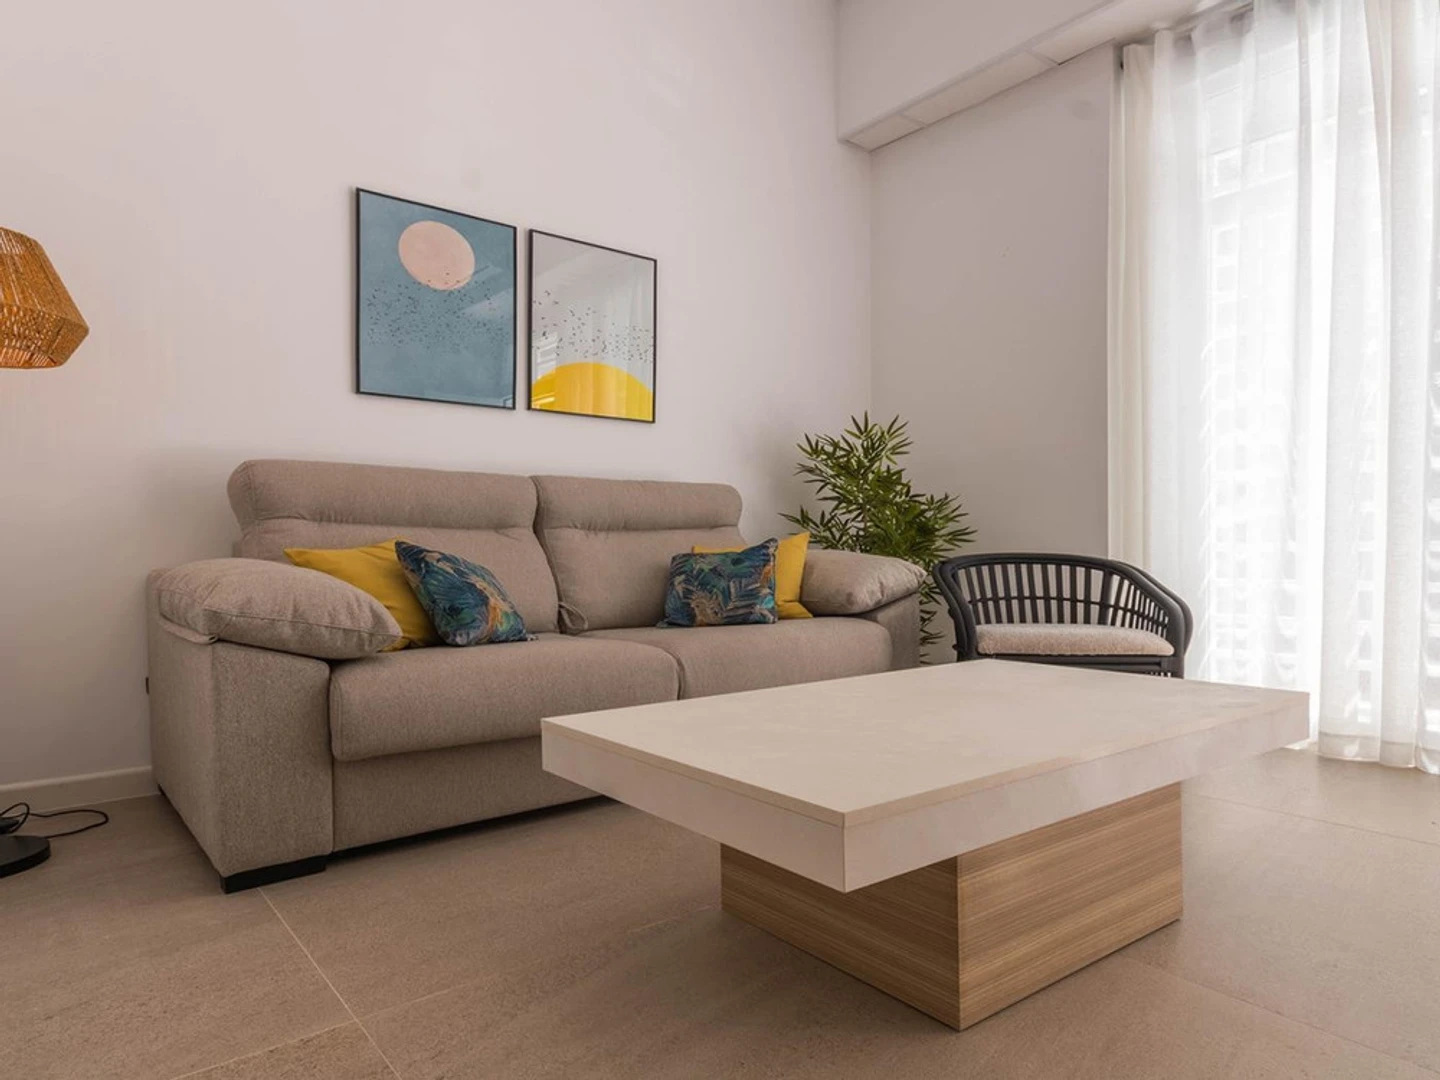 Entire fully furnished flat in Córdoba